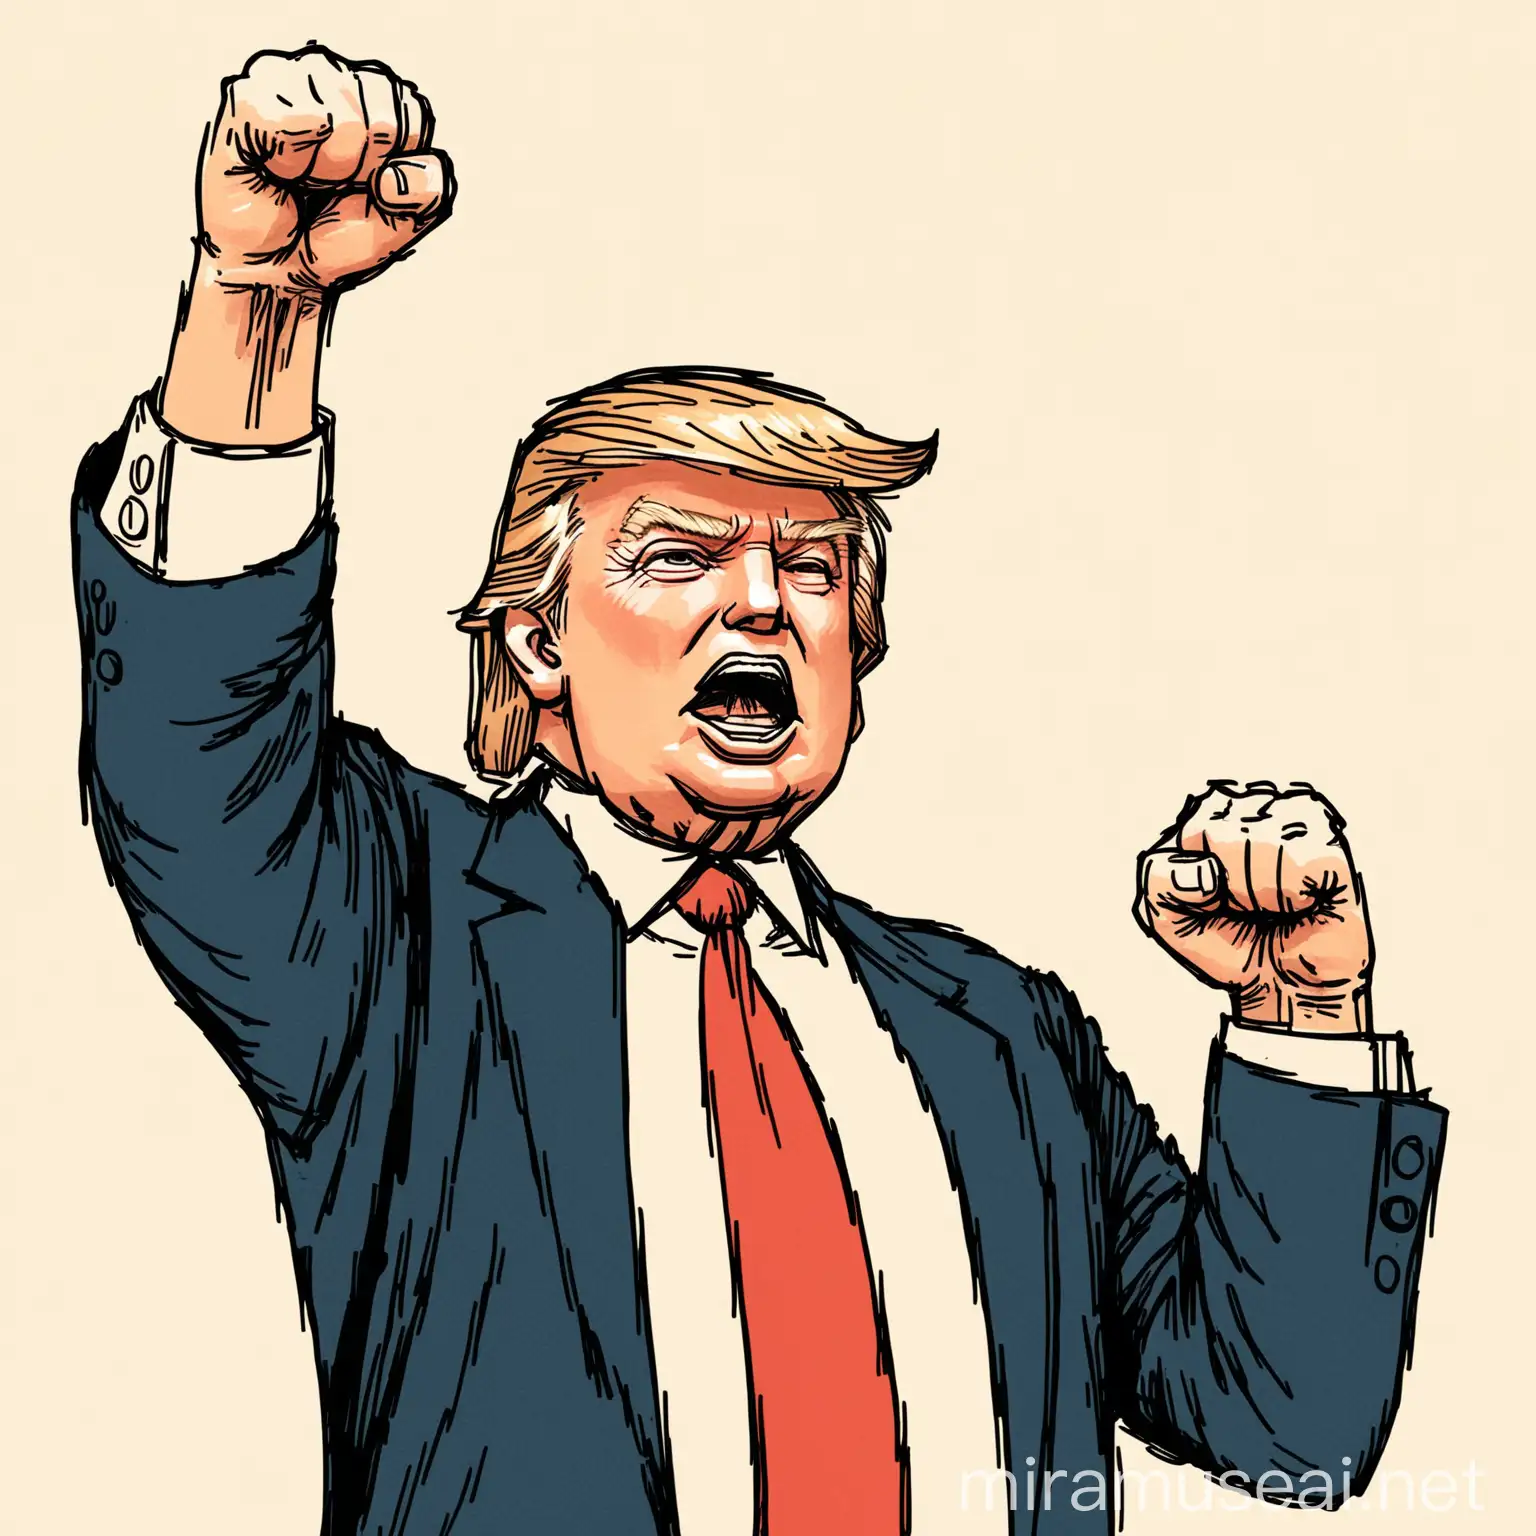 HandDrawn Illustration of Donald Trump Raising a Fist